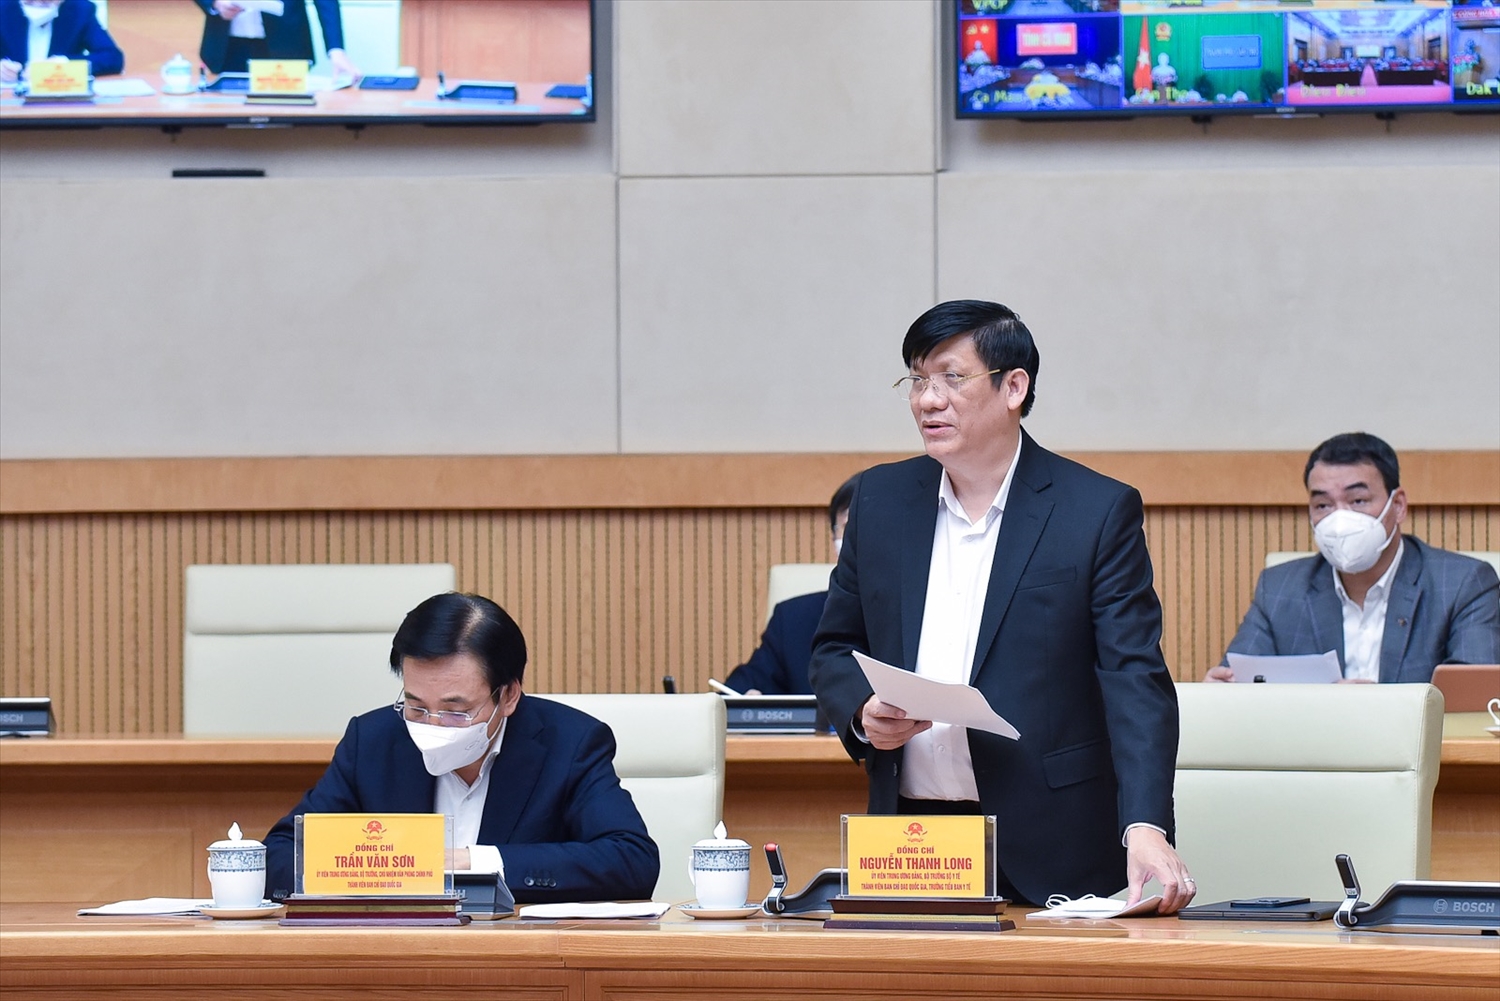 Bộ trưởng Bộ Y tế Nguyễn Thanh Long báo cáo tại cuộc họp - Ảnh: VGP/Nhật Bắc